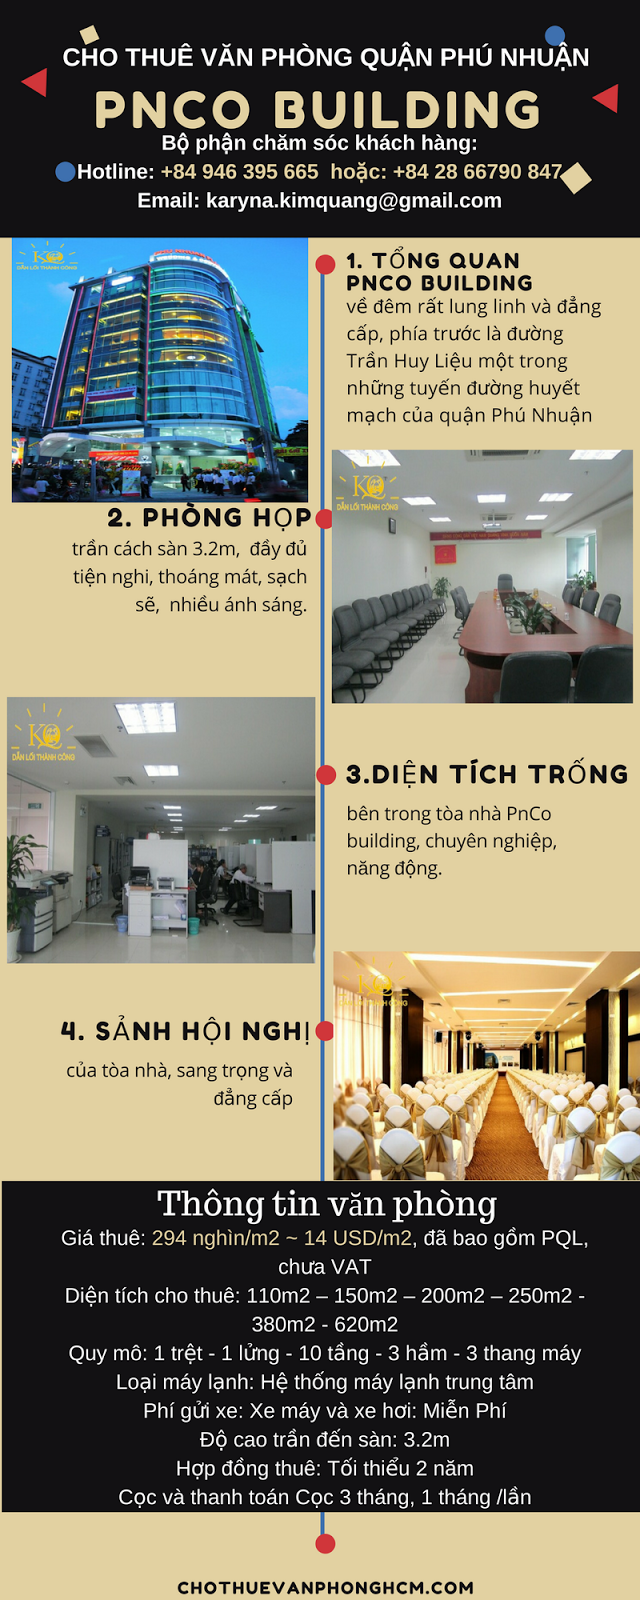 Cho thuê văn phòng quận Phú Nhuận Pnco building